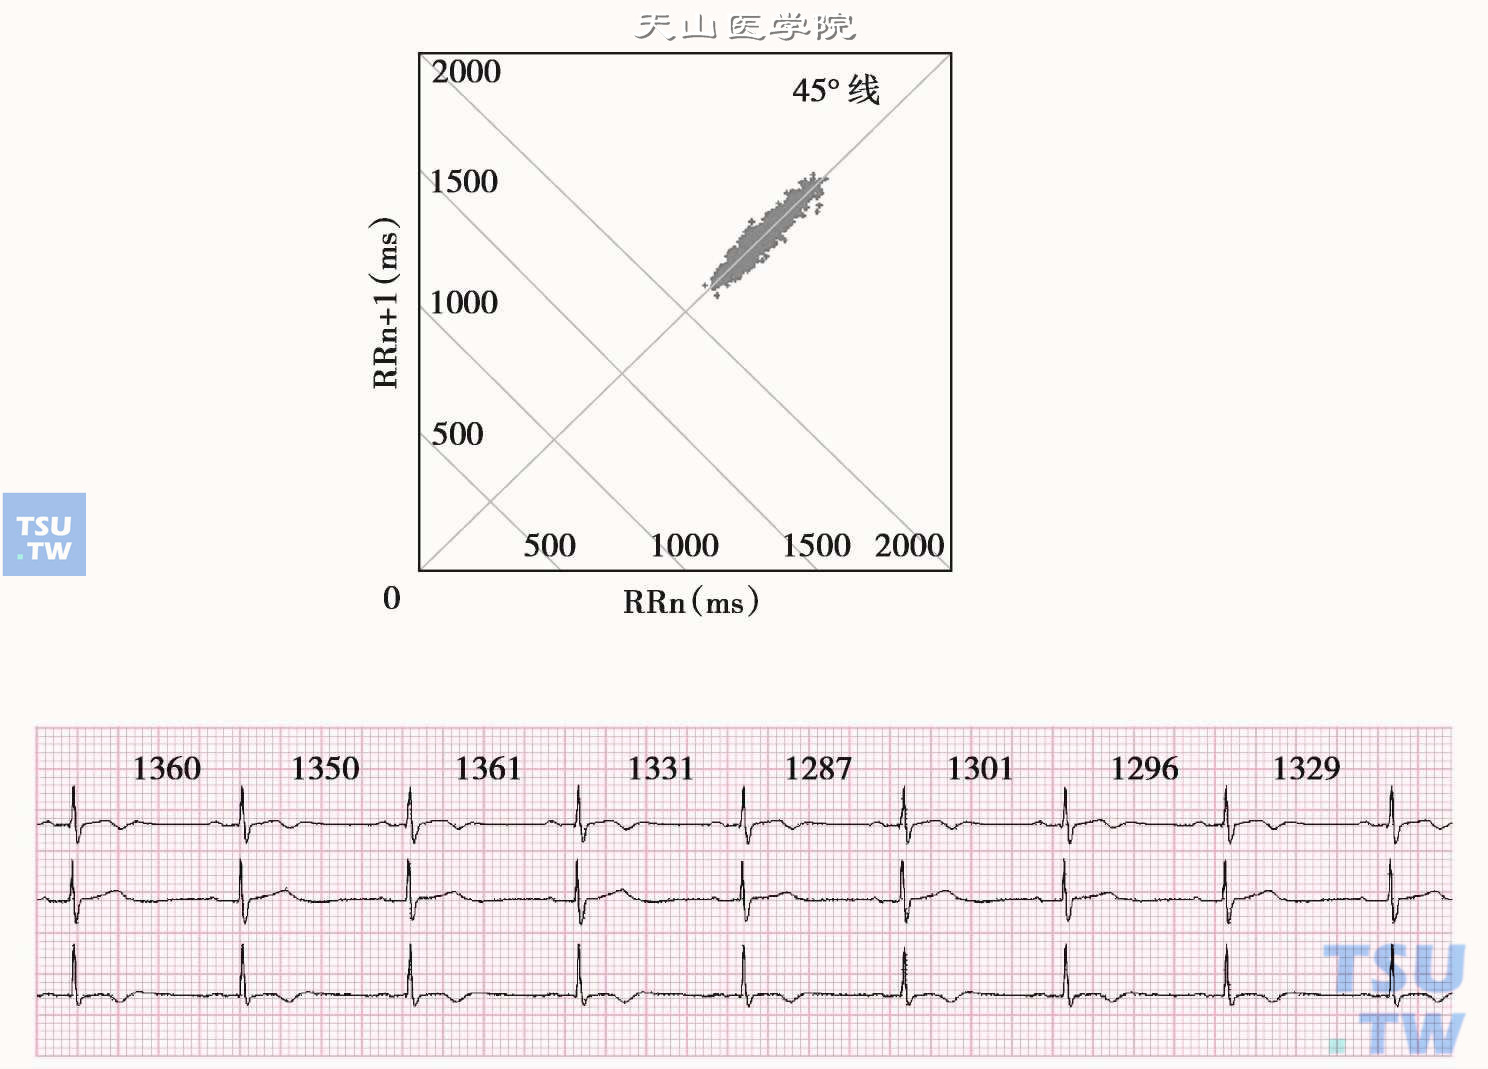  窦性心动过缓：上图为1小时的心电散点图，图形分布于45°线远端，呈棒状。